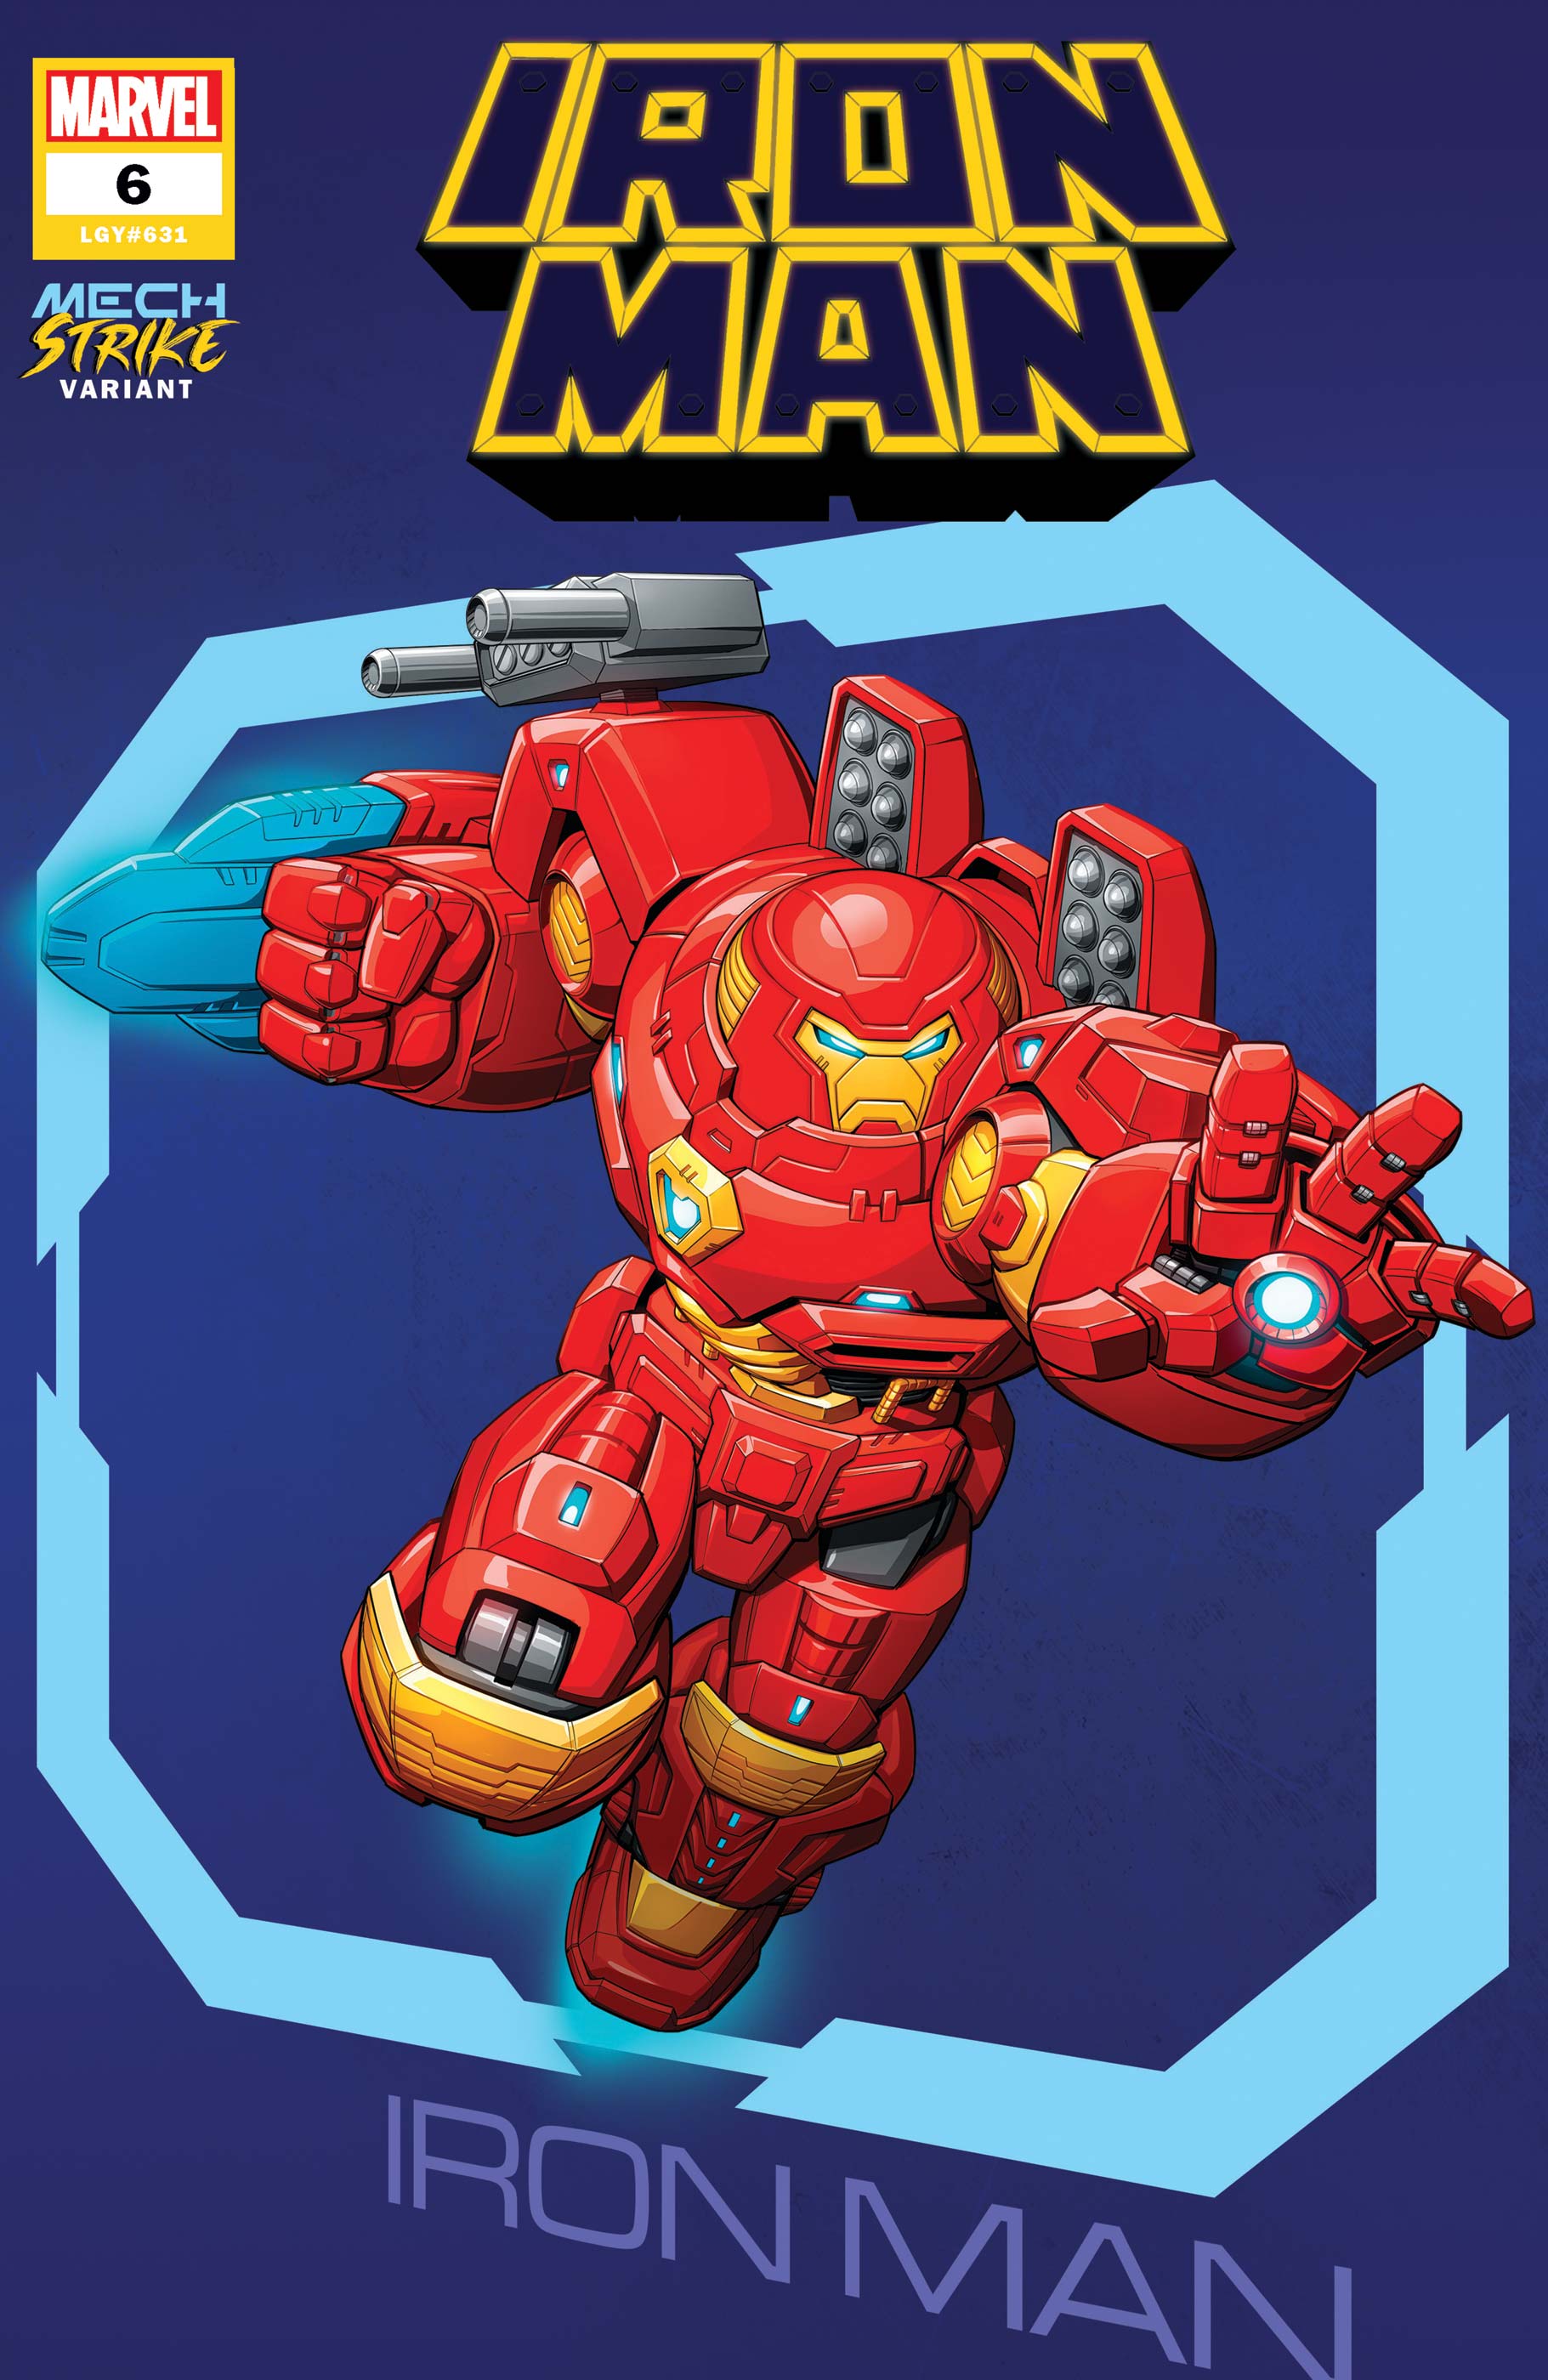 Iron Man (2020) #6 (Variant)